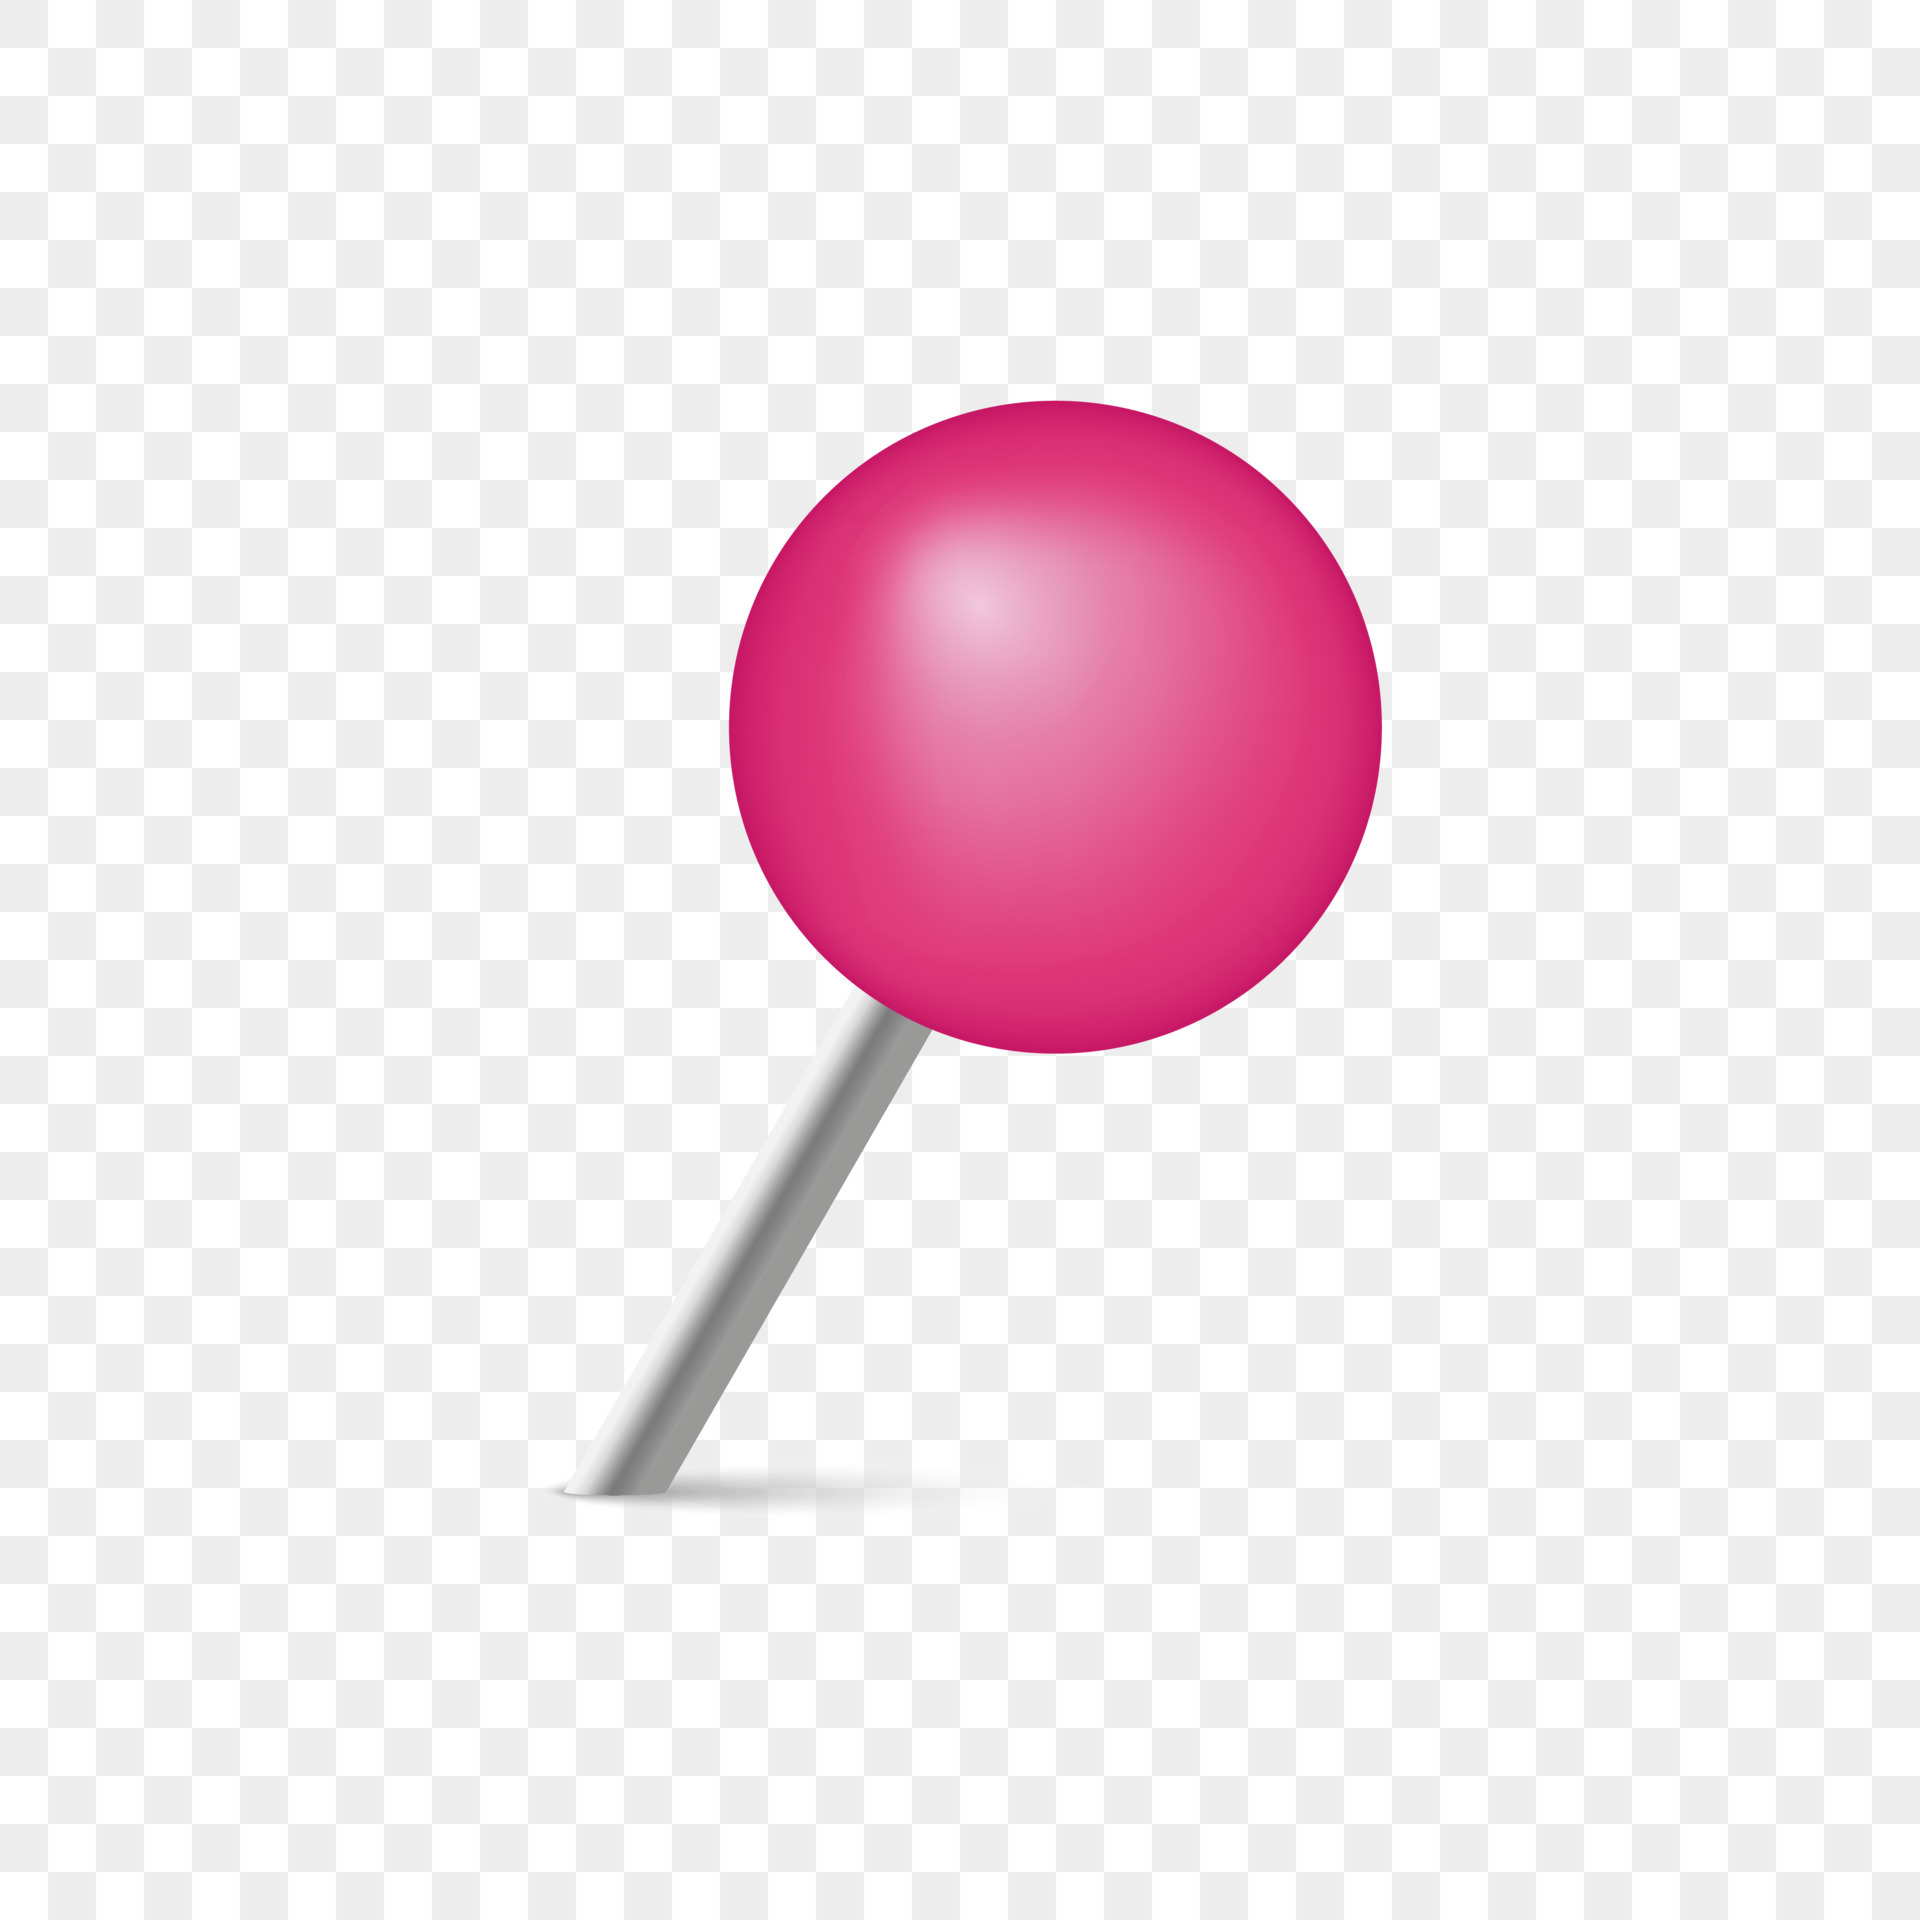 roze kantoorpunaise voor prikbord bevestig papier aan de muur. punaise met metalen naald roze kop. plastic cirkel push pins op transparante achtergrond. geïsoleerde vectorillustratie. 5893693 - Download Free Vectors, Vector